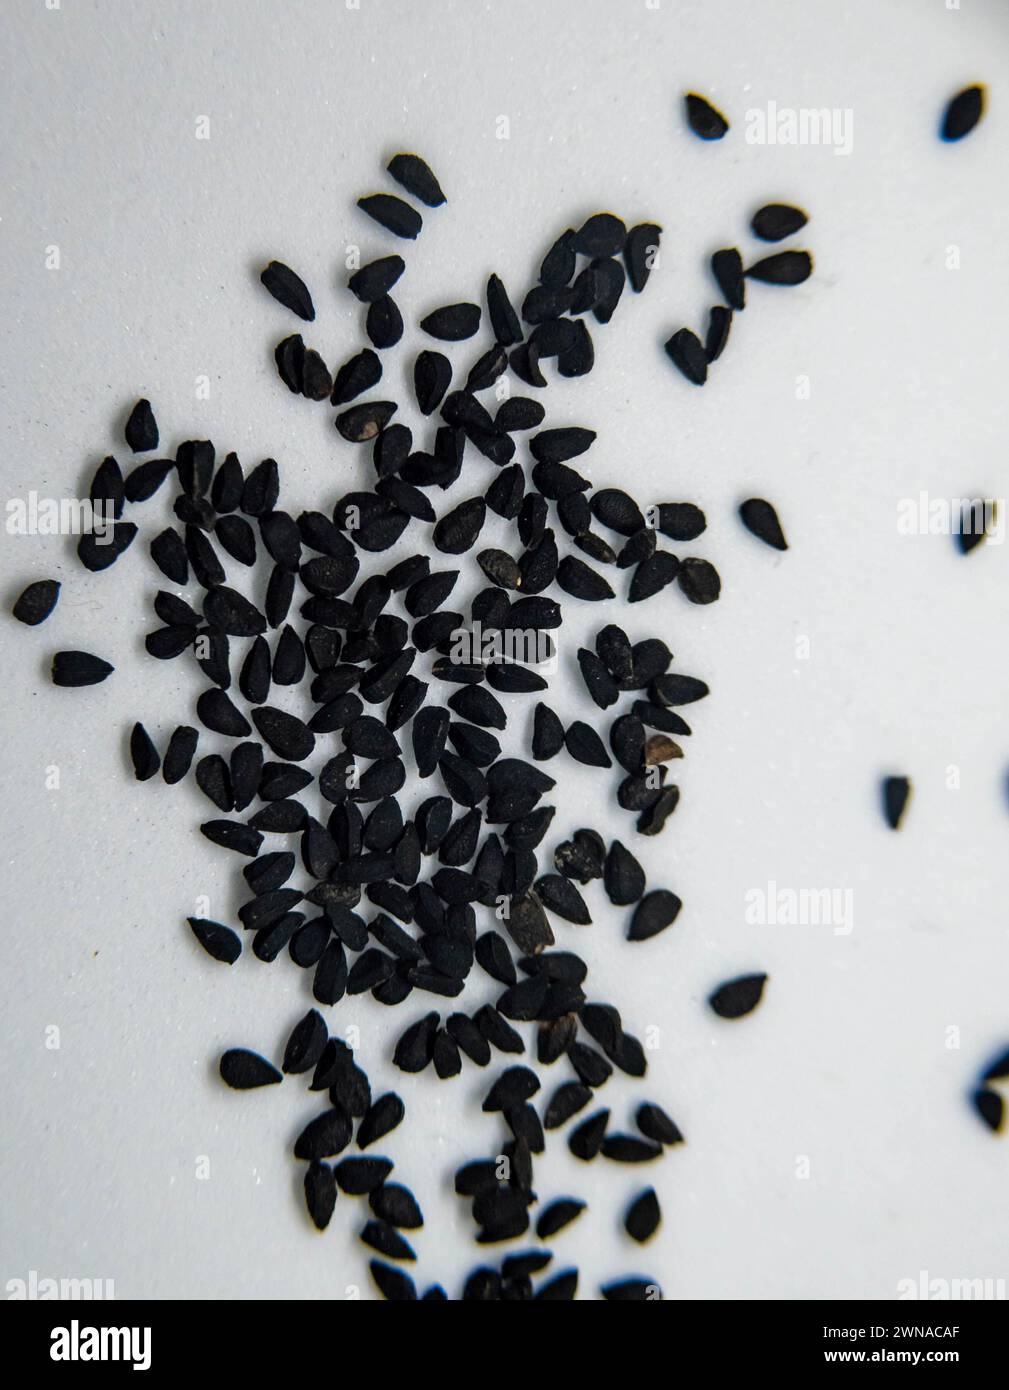 Les graines de Kalonji sont utilisées en phytothérapie depuis mille ans pour traiter une variété de maladies et de conditions, y compris le diabète et l'arthrite Banque D'Images